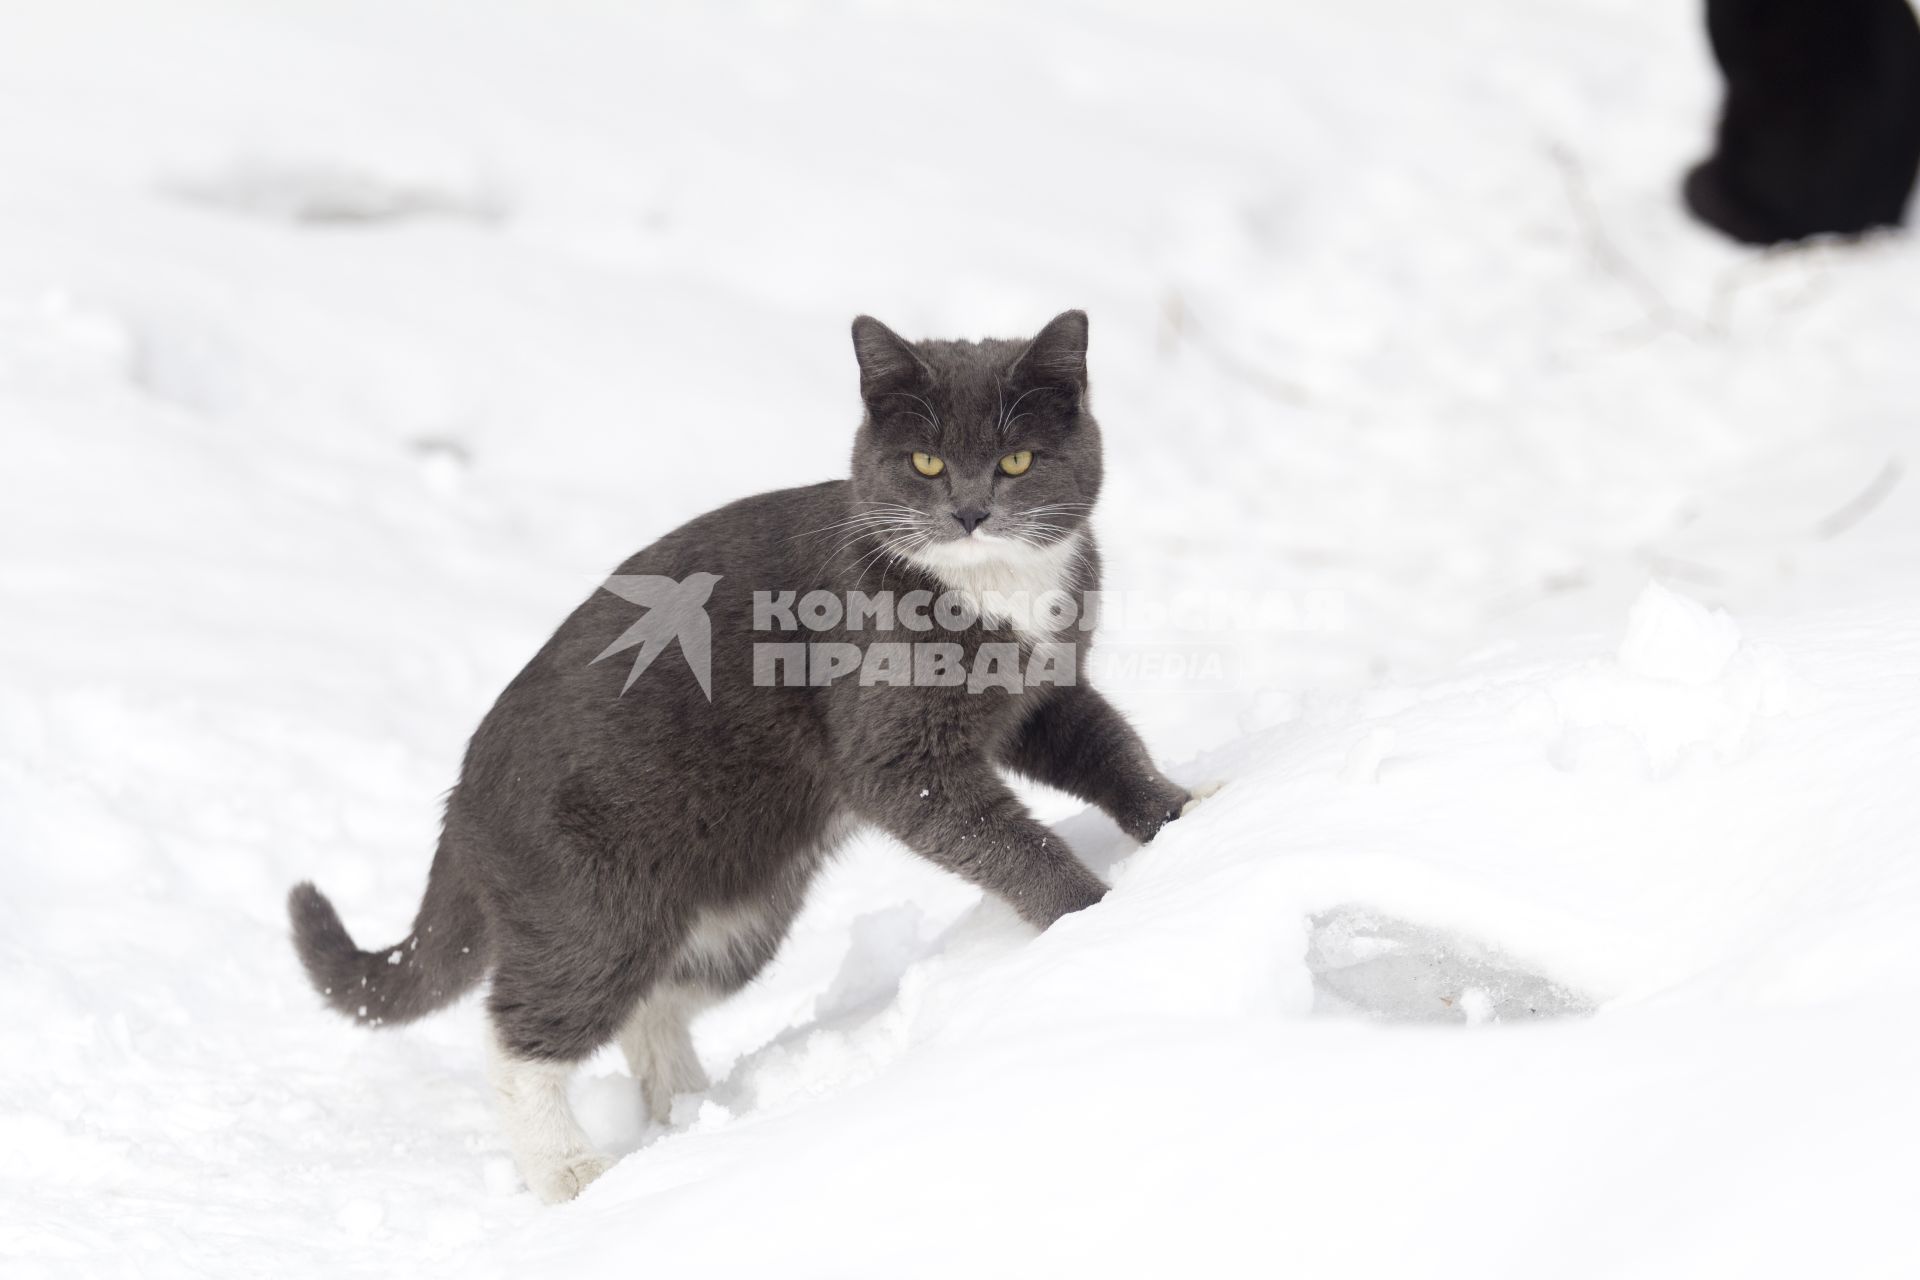 Иркутск.  Кошка на снегу.